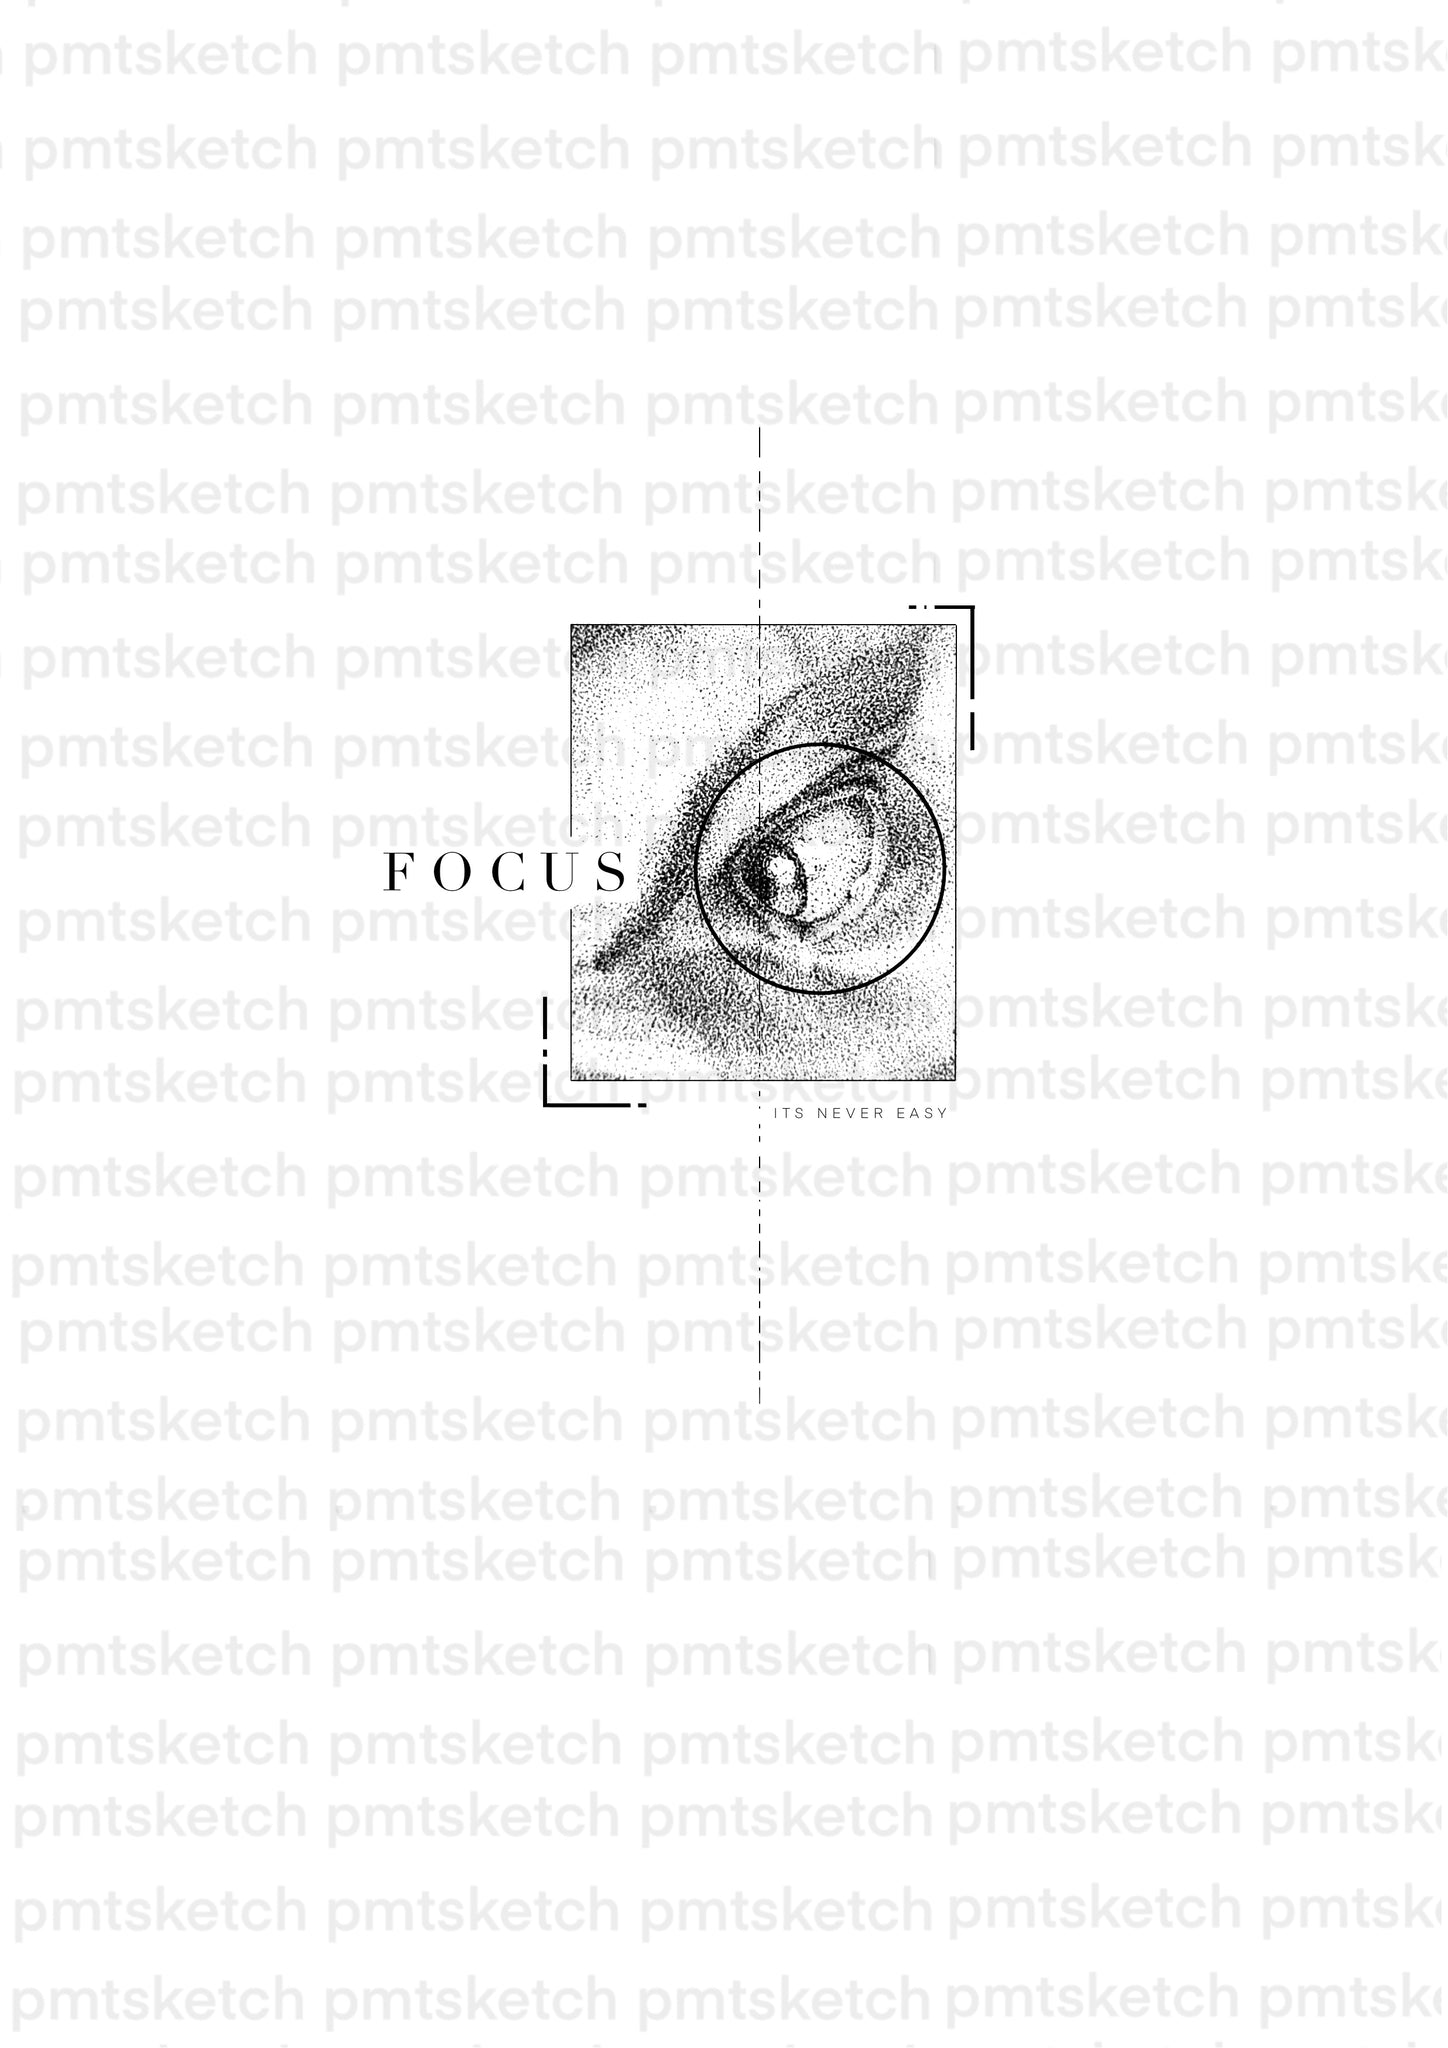 Focus / Eye